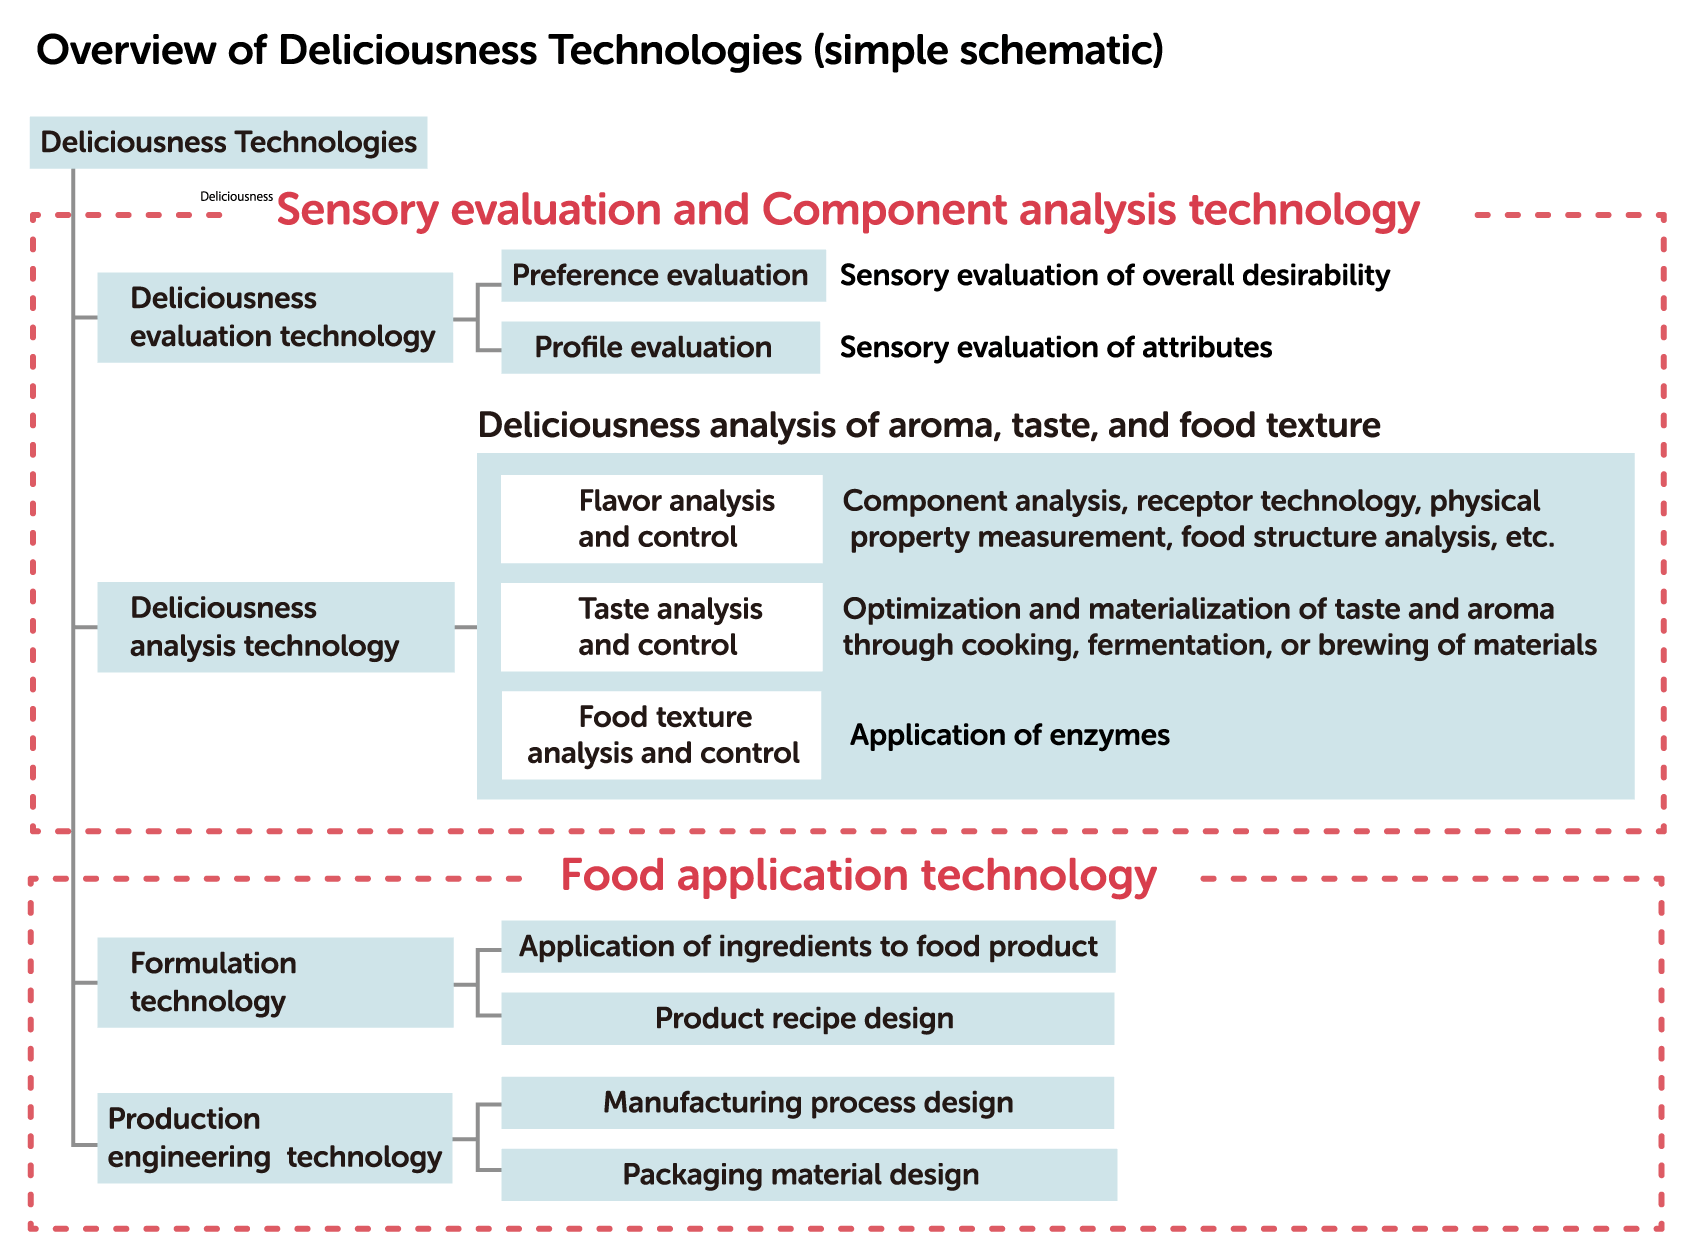 Descripción general de las tecnologías Deliciousness (esquema simple)